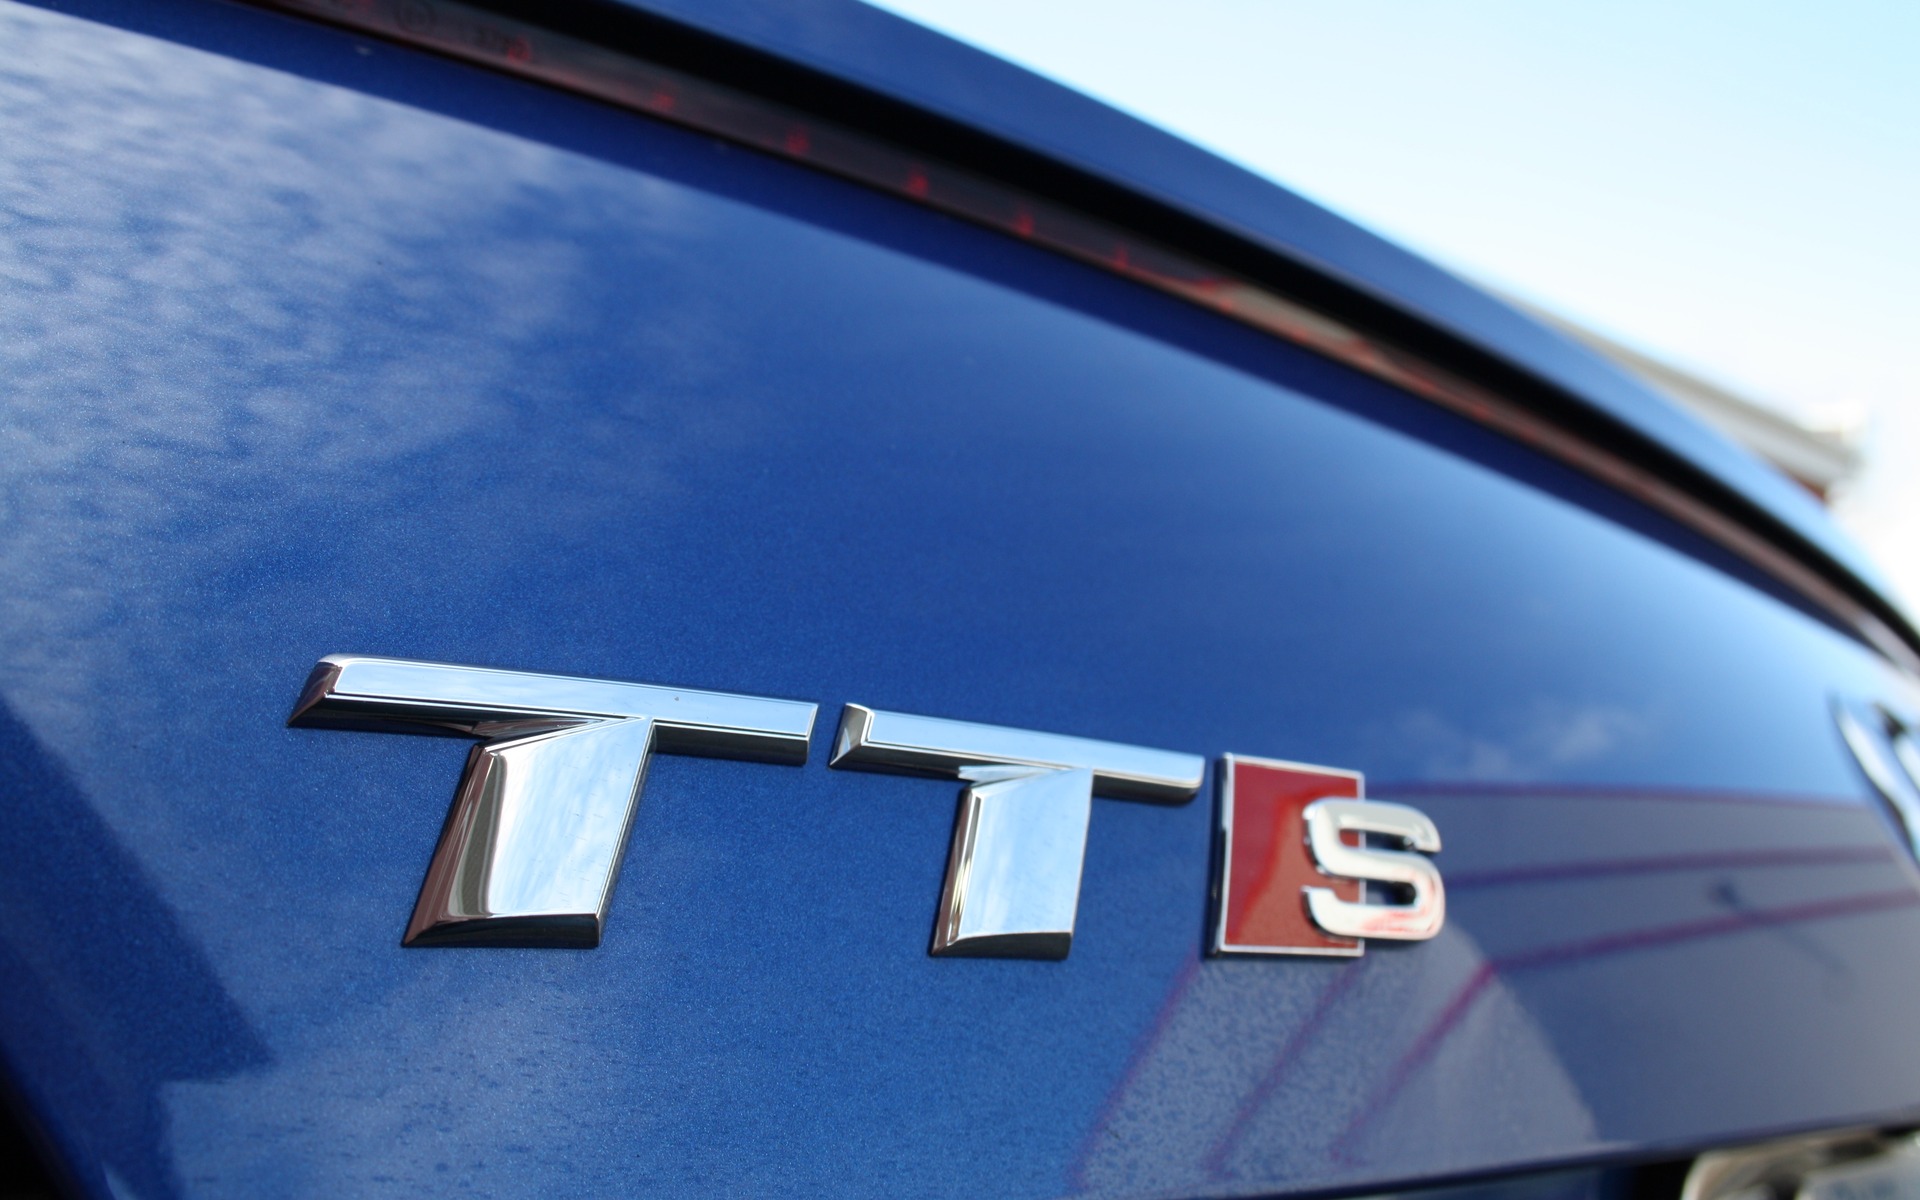 2016 Audi TTS